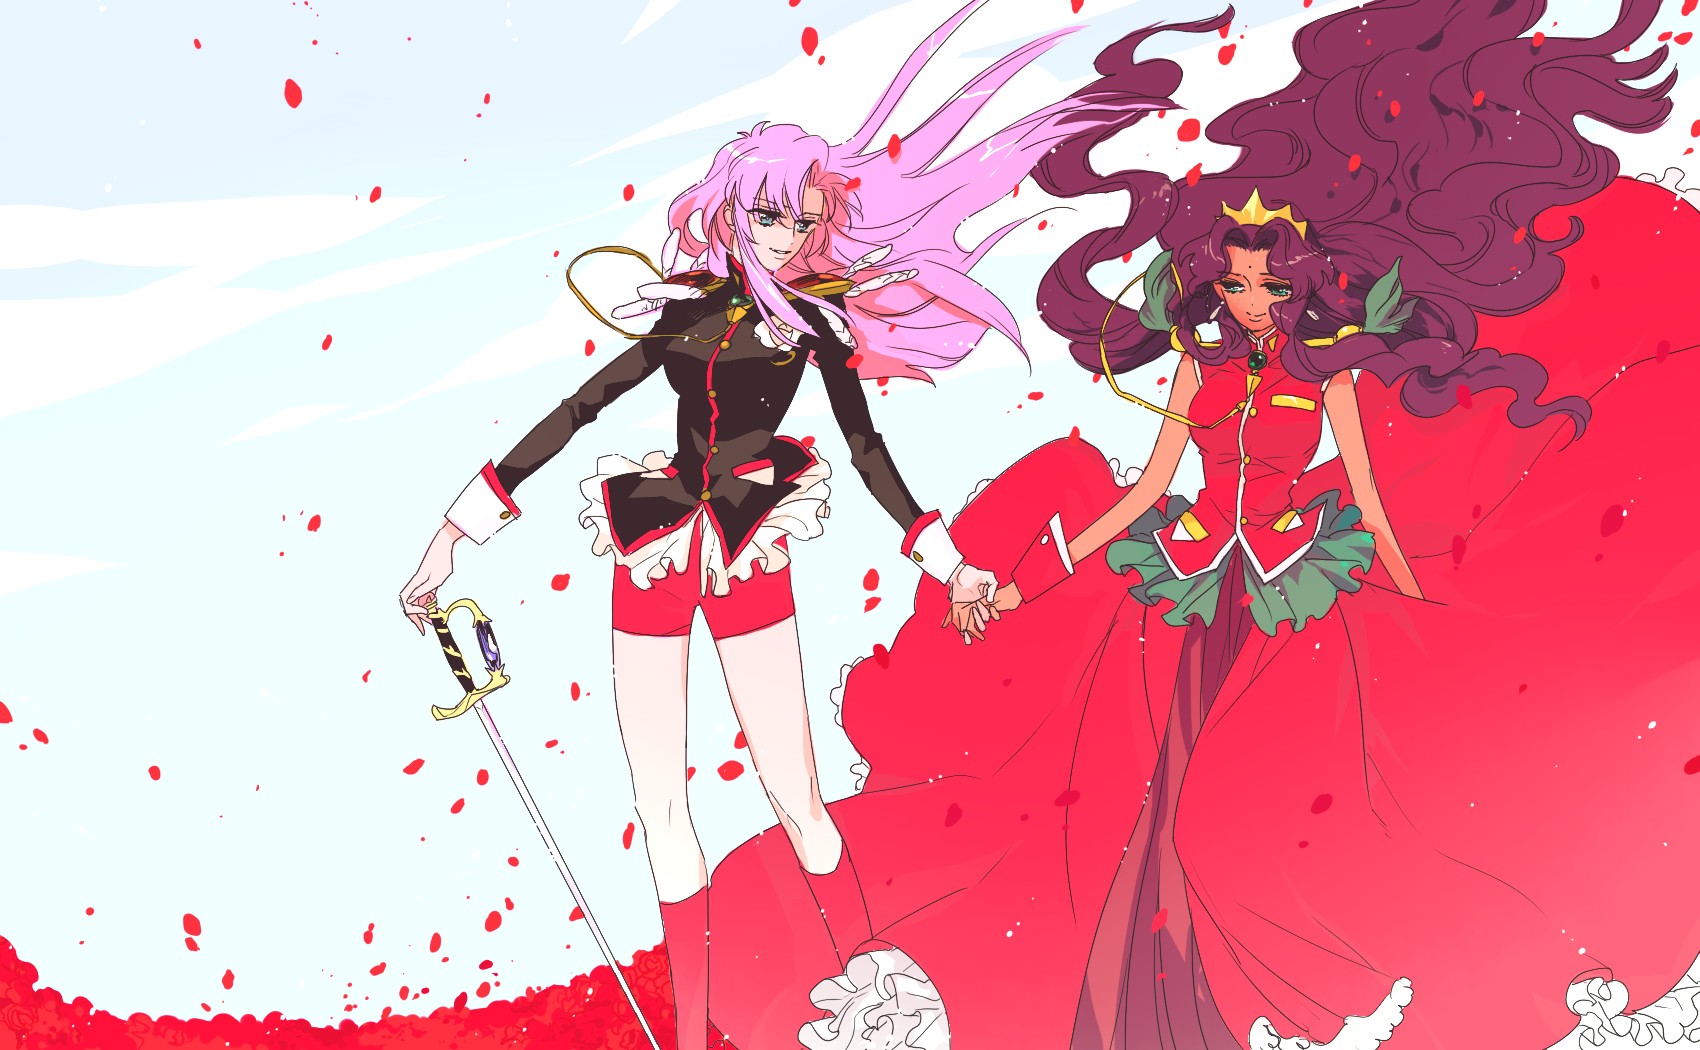 Revolutionary Girl Utena Wallpapers Anime Hq Revolutionary Girl Utena Pictures 4k Wallpapers 19